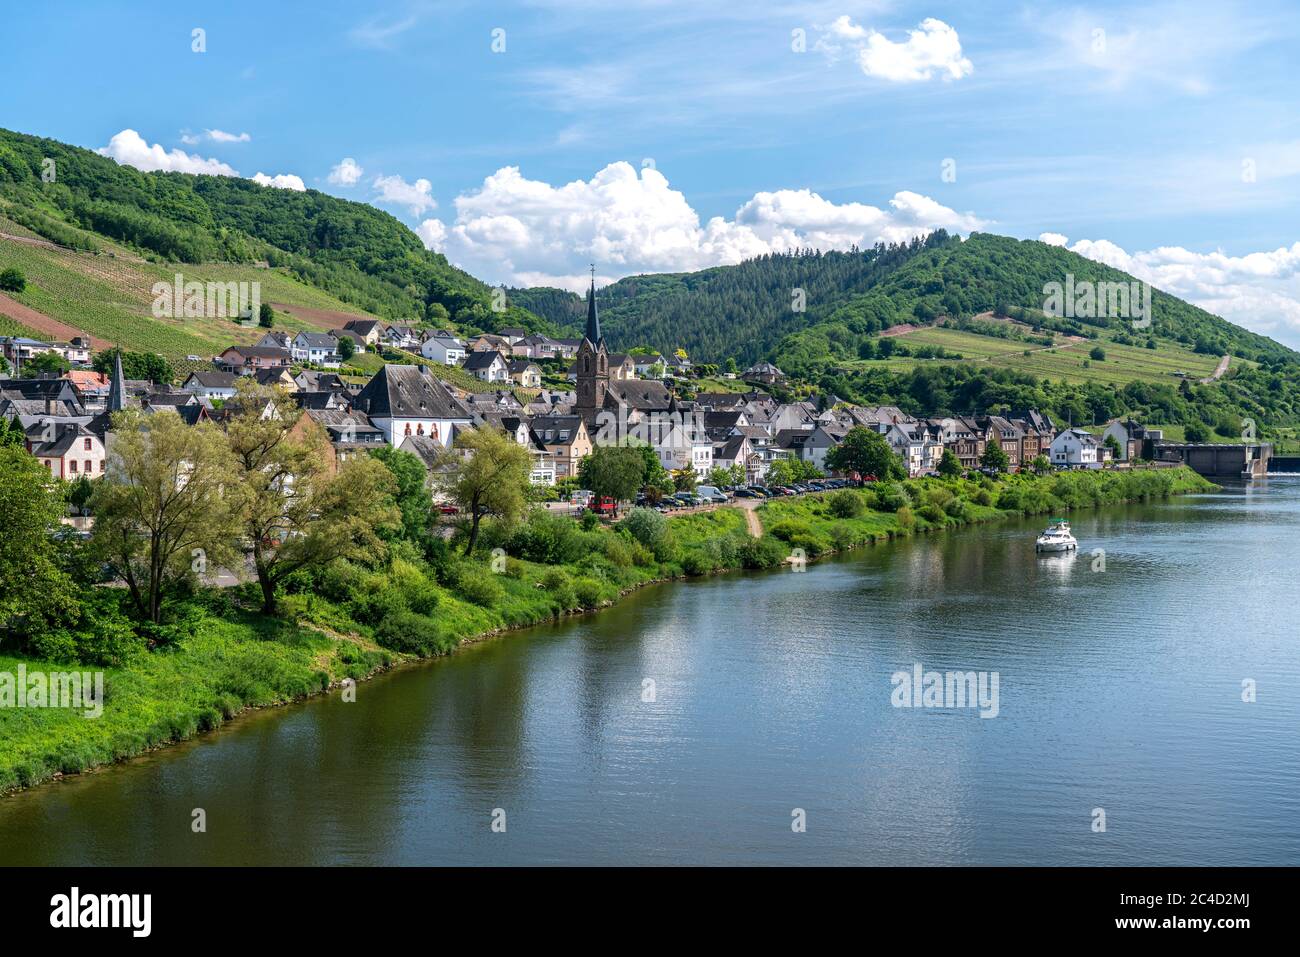 Der Weinort Neef an der Mosel, Cochem-Zell, Rheinland-Pfalz, Deutschland  |   winegrowing centre Neef and the Moselle river, Rhineland-Palatinate, Ger Stock Photo